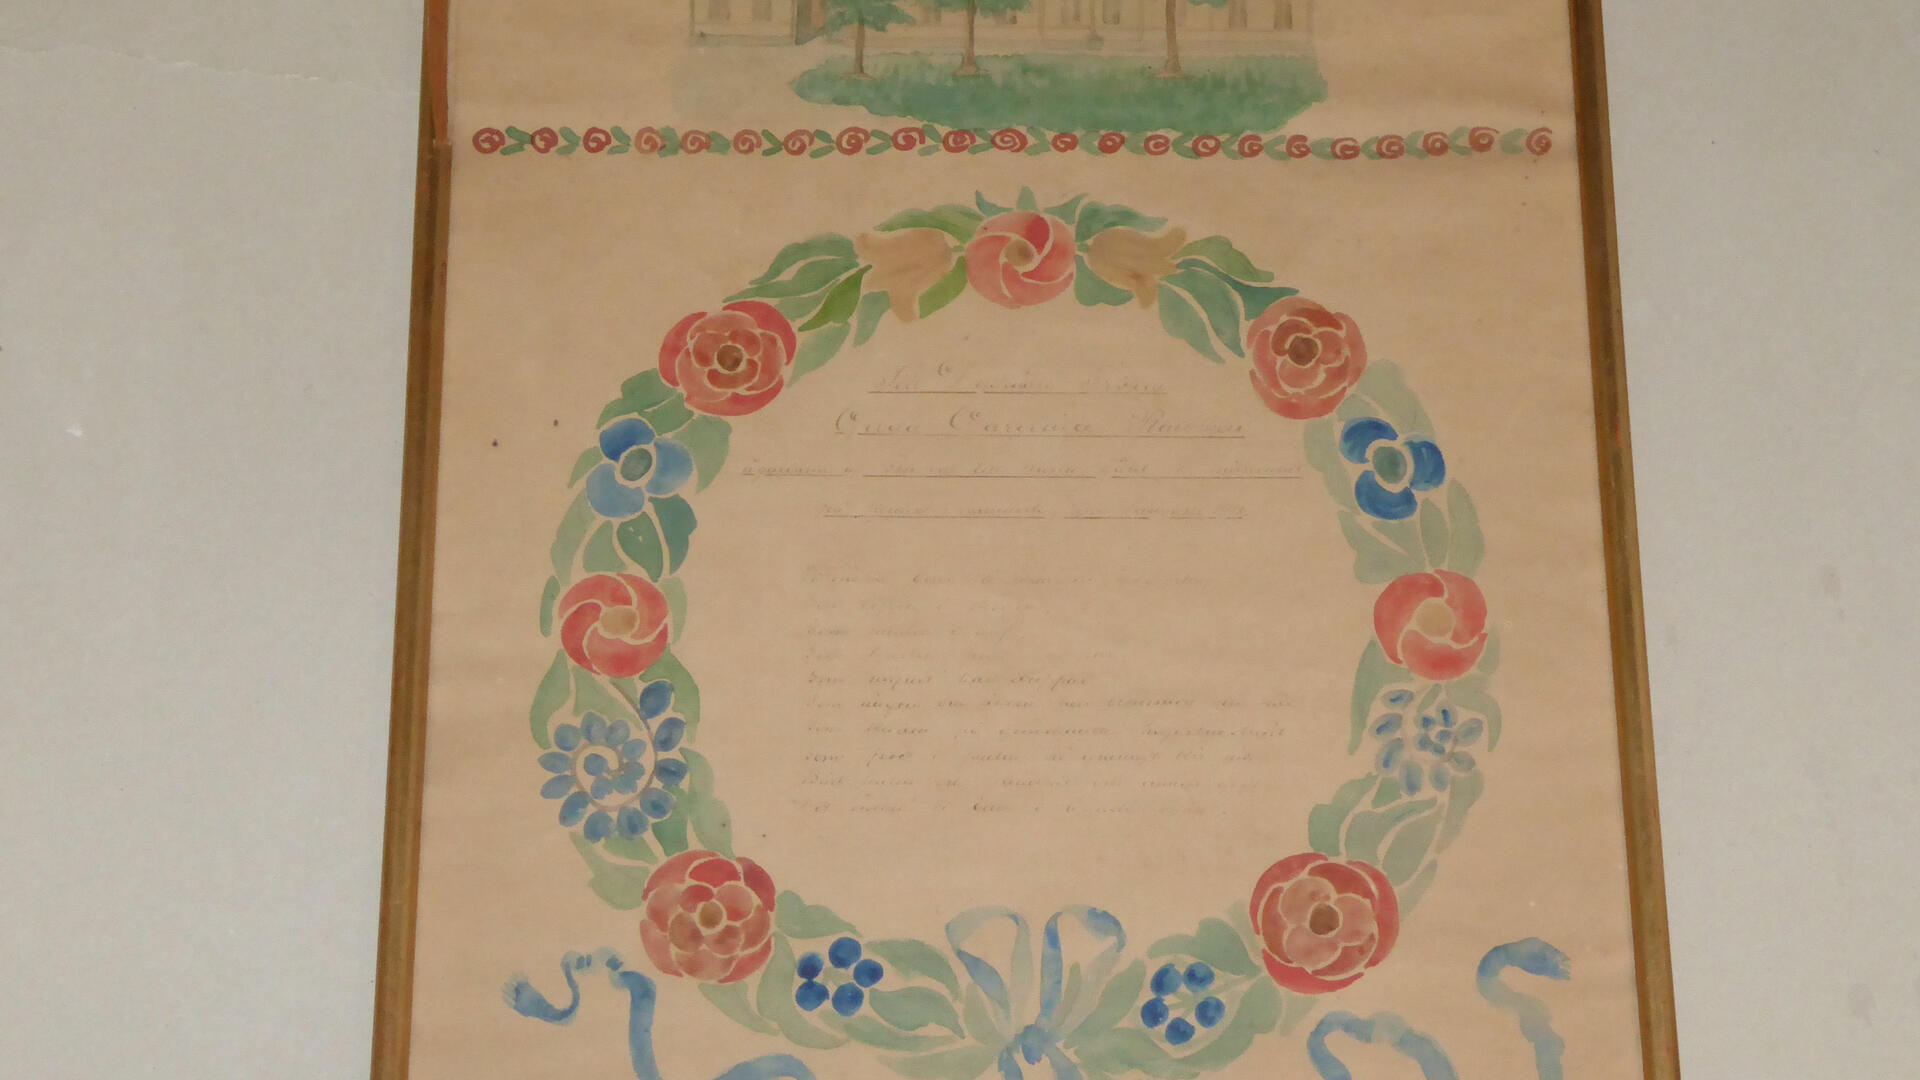 Kehystetty nimipäivätaulu, jossa on akvarellivärein maalatun kukkakranssin sisällä tekstiä